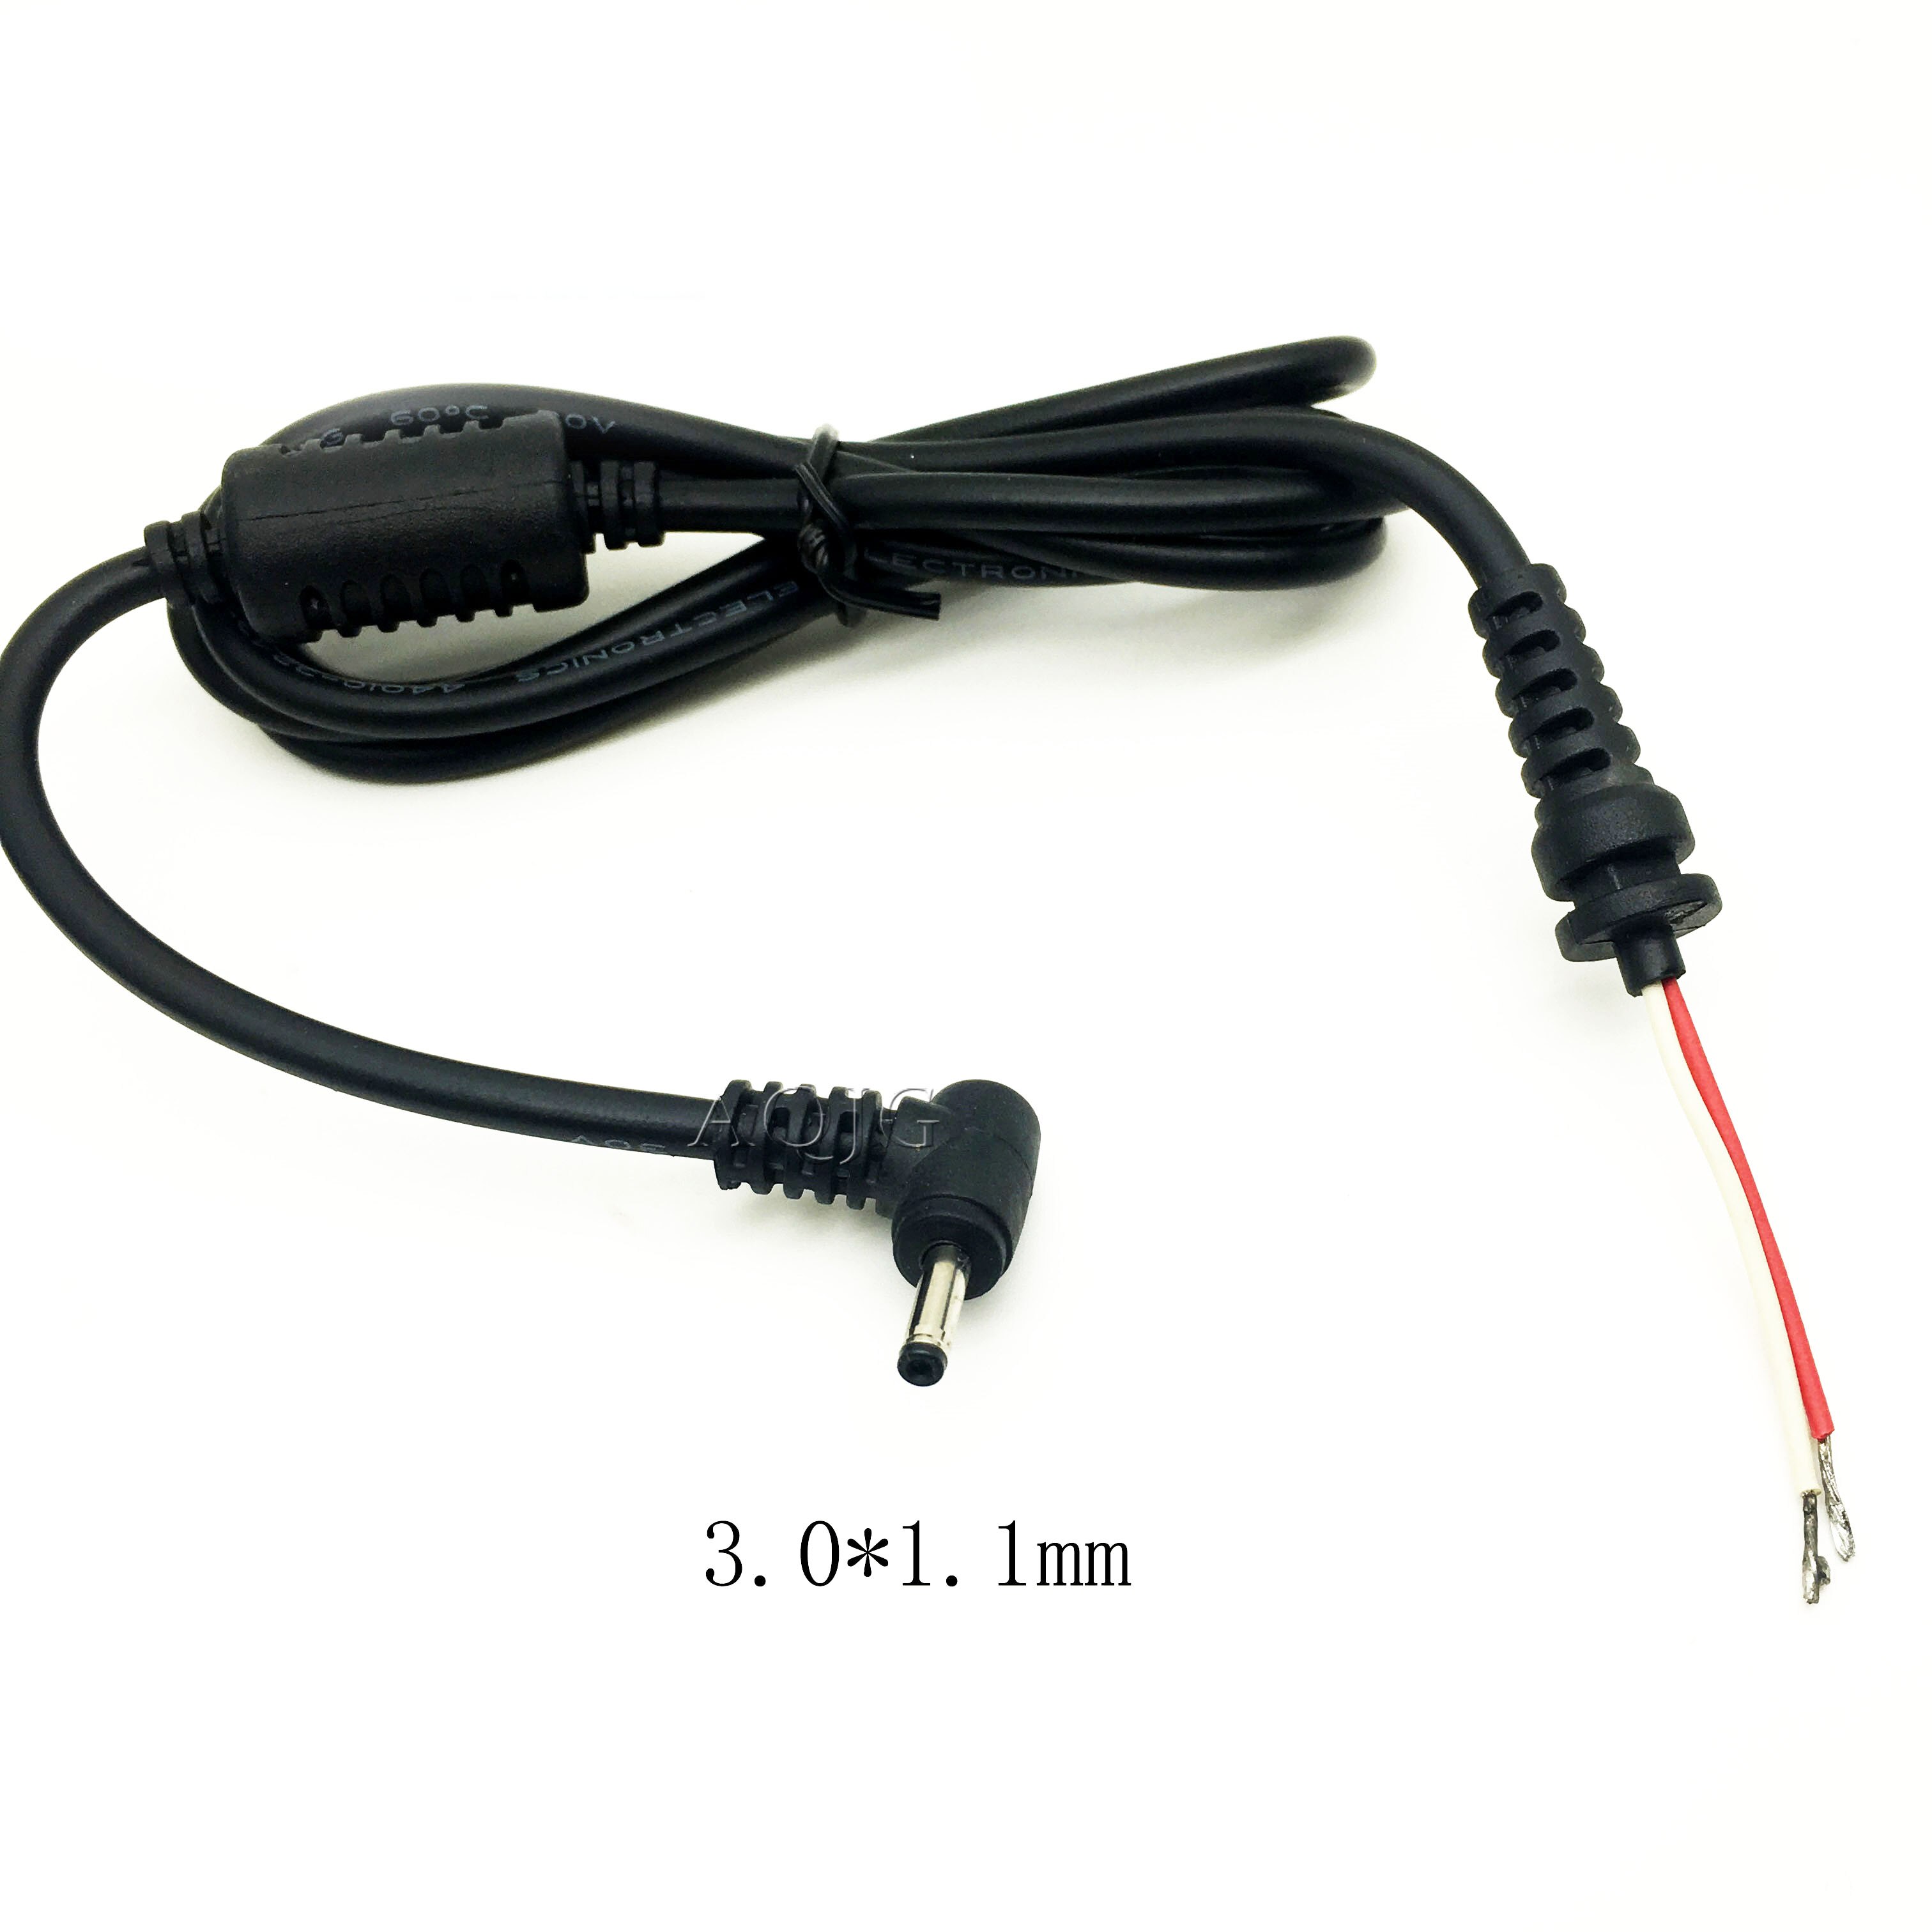 Dc 3.0*1.1 3.0X1.1 Mm Voeding Plug Jack Connector Met Snoer/Kabel Voor Asus Voor samsung Charger Ultrabook Adapter